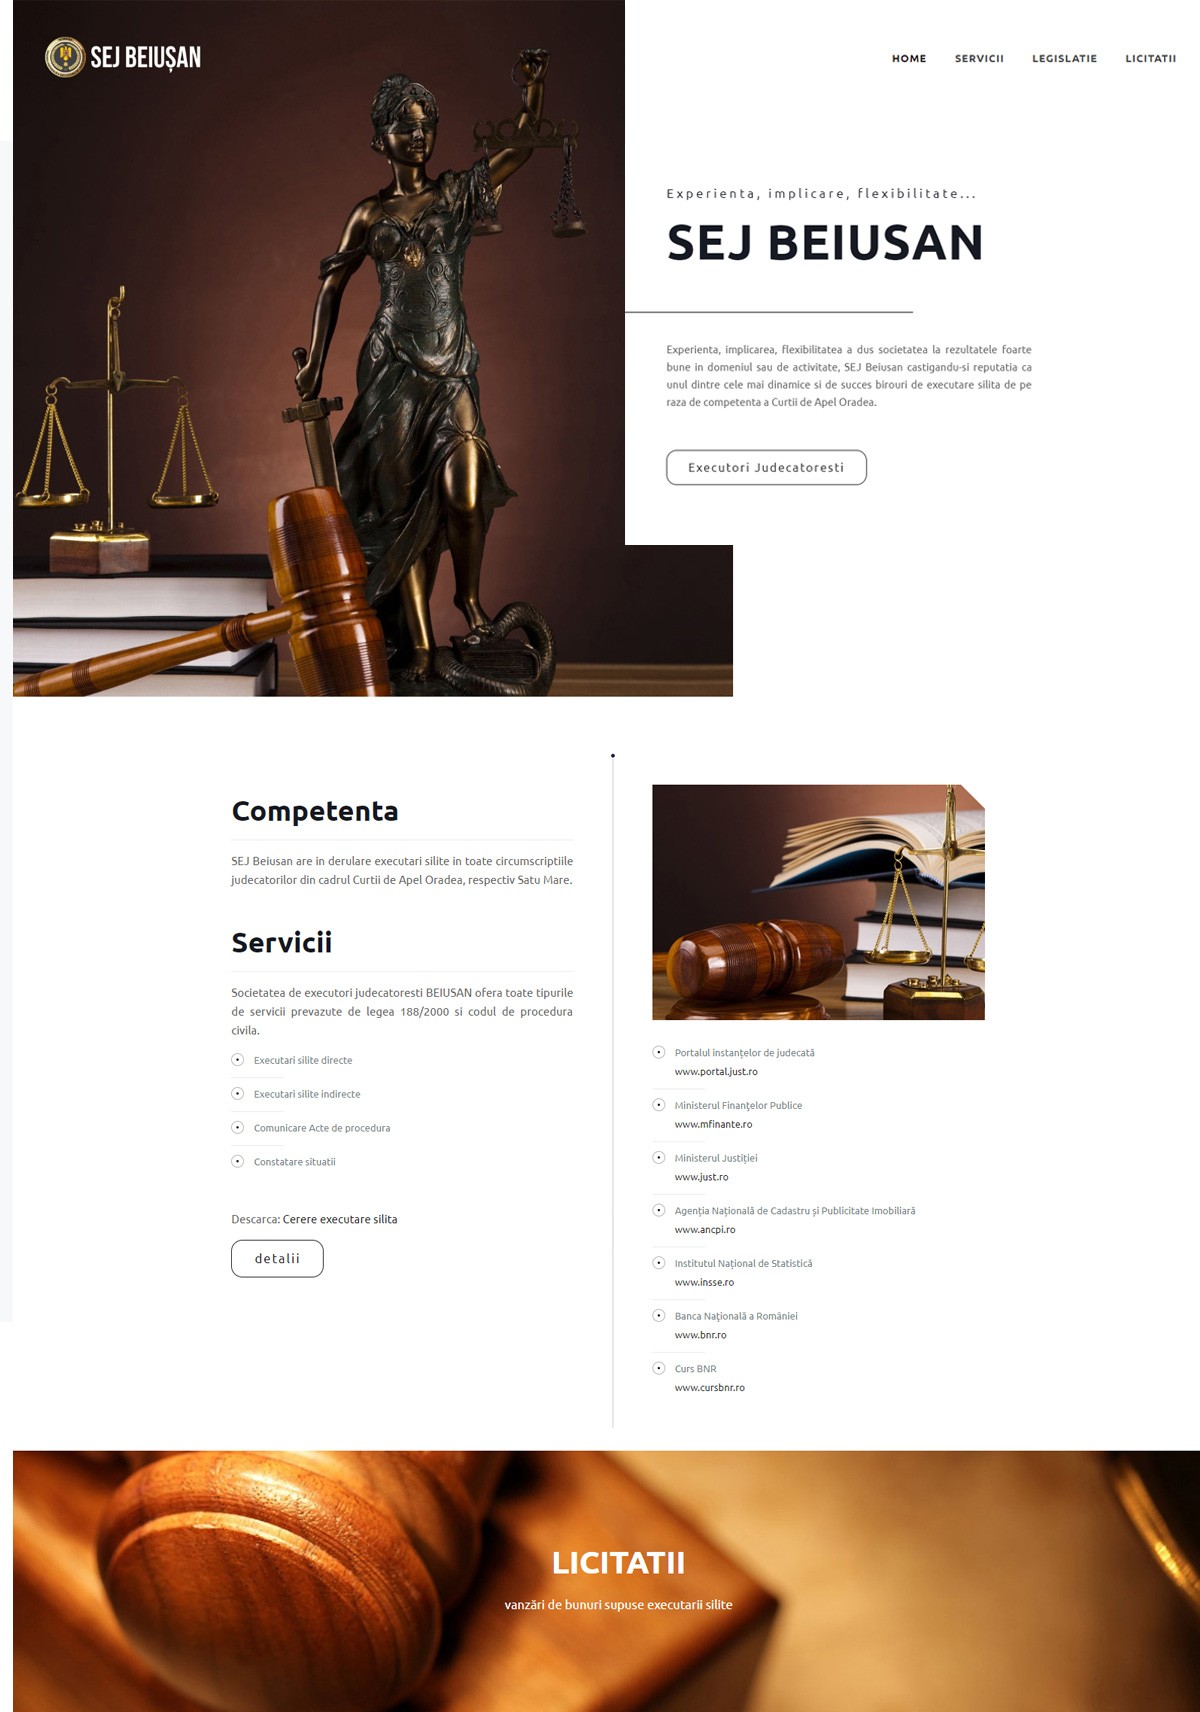 design web site prezentare executor judecatoresc beiusan agentie publicitate 21vision oradea